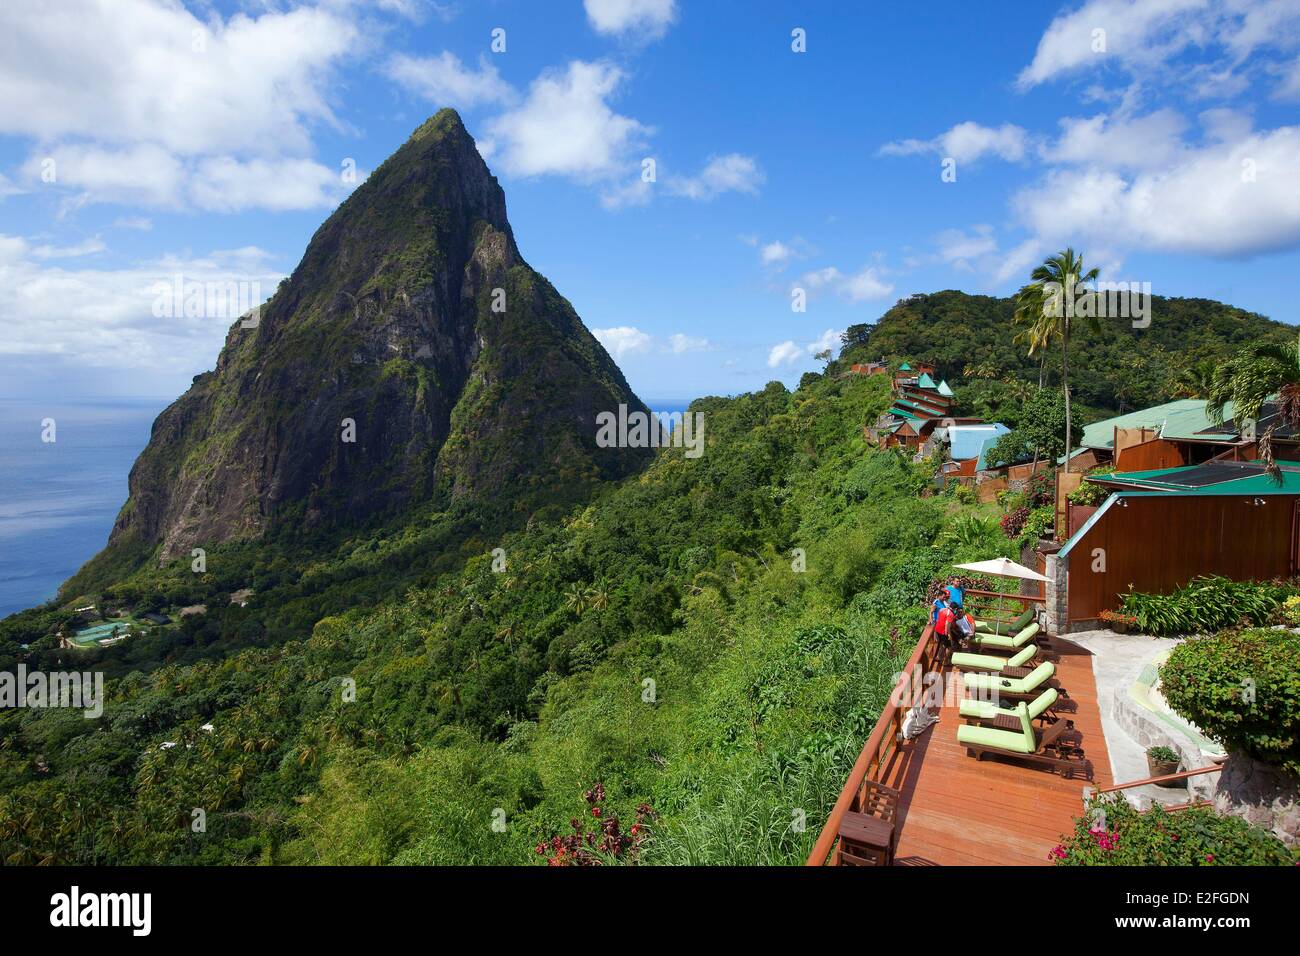 Indie occidentali Isole dei Caraibi del vento Saint Lucia West Island Soufriere District hotel Soufriere Ladera ristorante nel Foto Stock